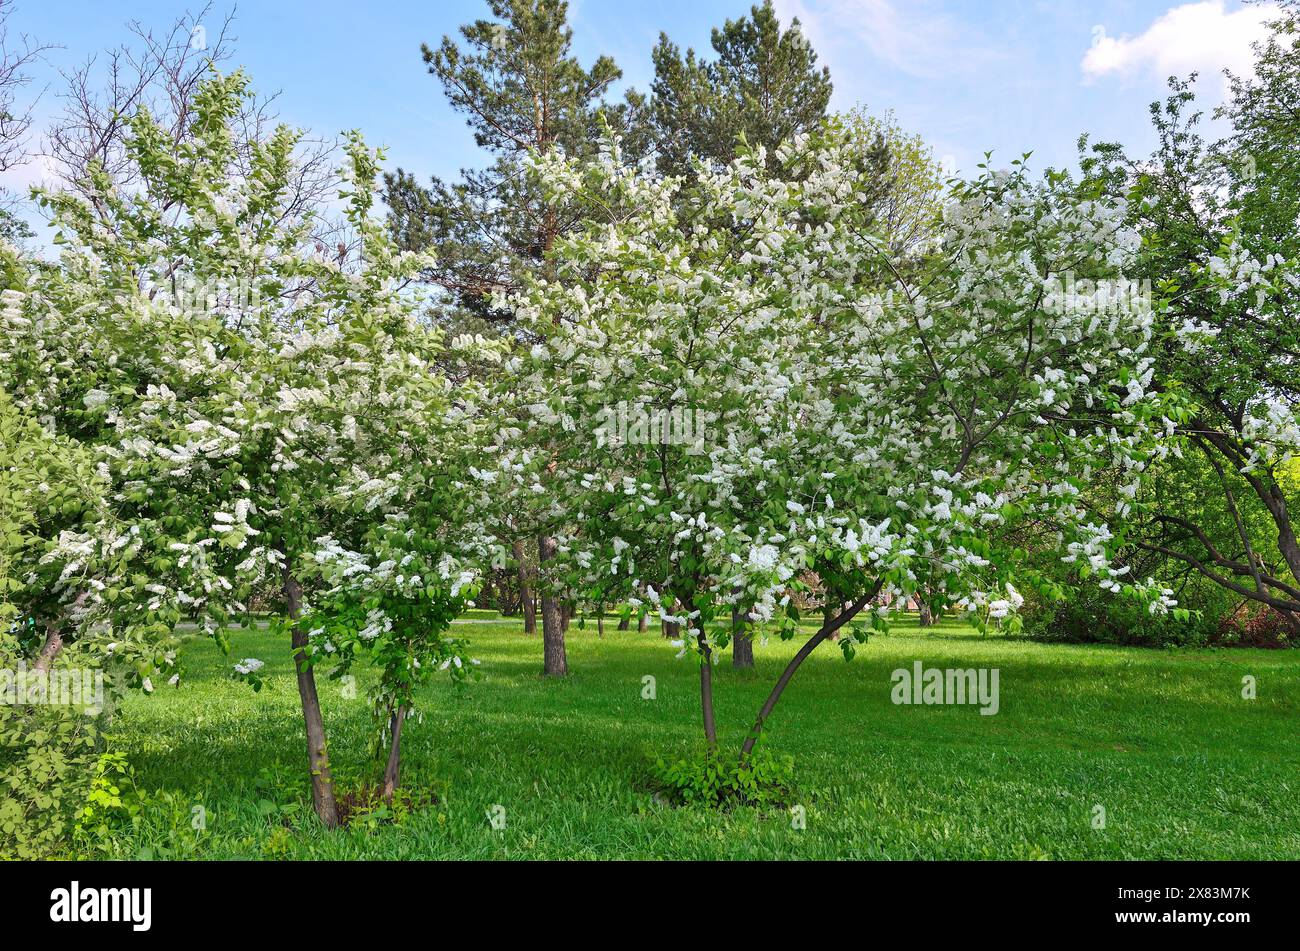 Cerisier d'oiseau en fleurs blanches (Prunus padus), ou hackberry dans le parc de la ville de printemps - beau paysage urbain ensoleillé de printemps. Parfum blanc luxuriant infl Banque D'Images